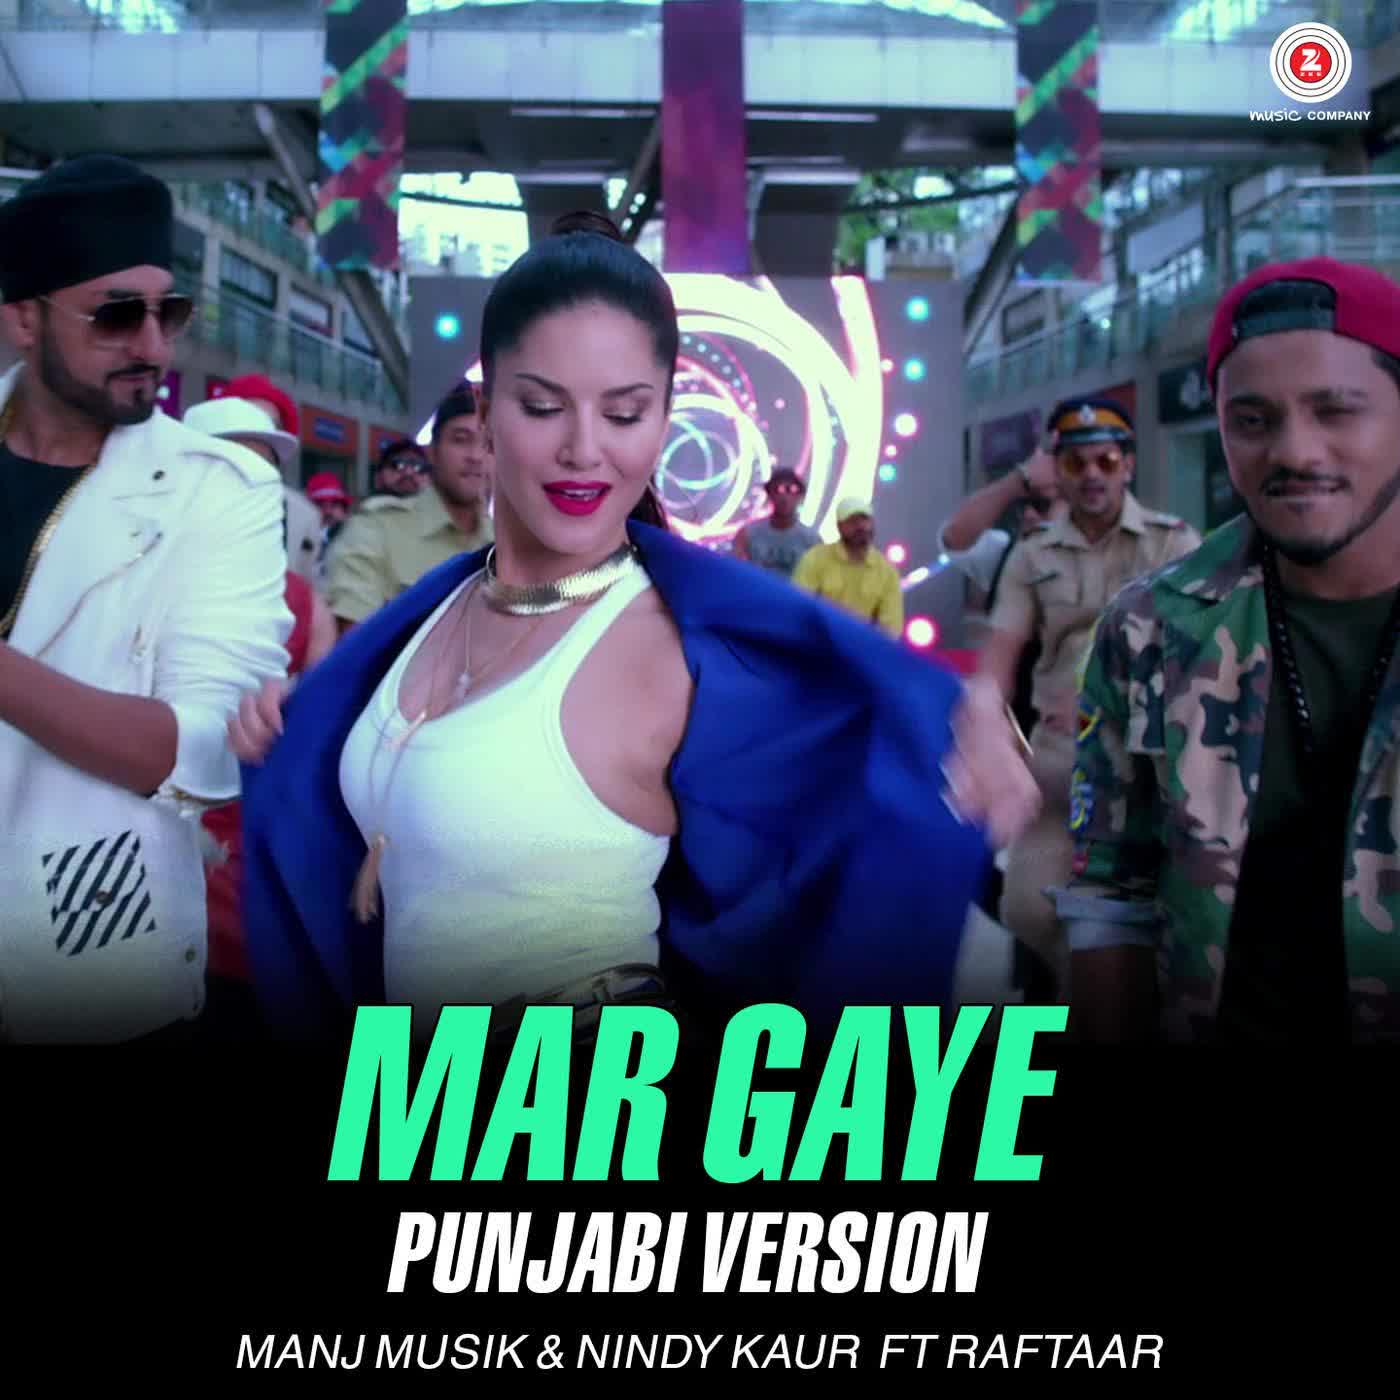 Mar Gaye (Punjabi Version) Manj Musik Mp3 Song